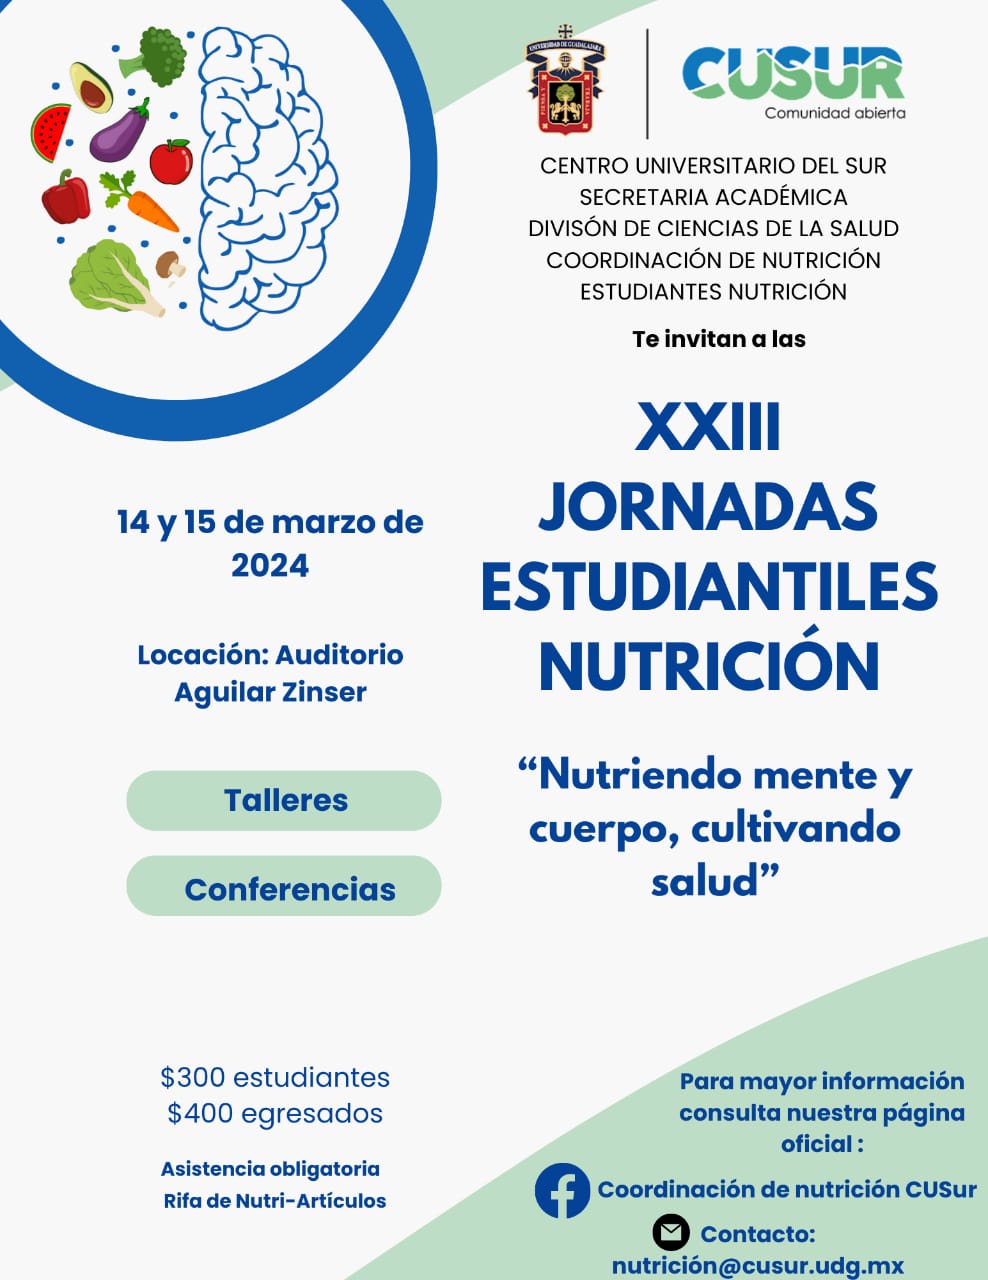 XXIII Jornadas Estudiantiles Nutrición